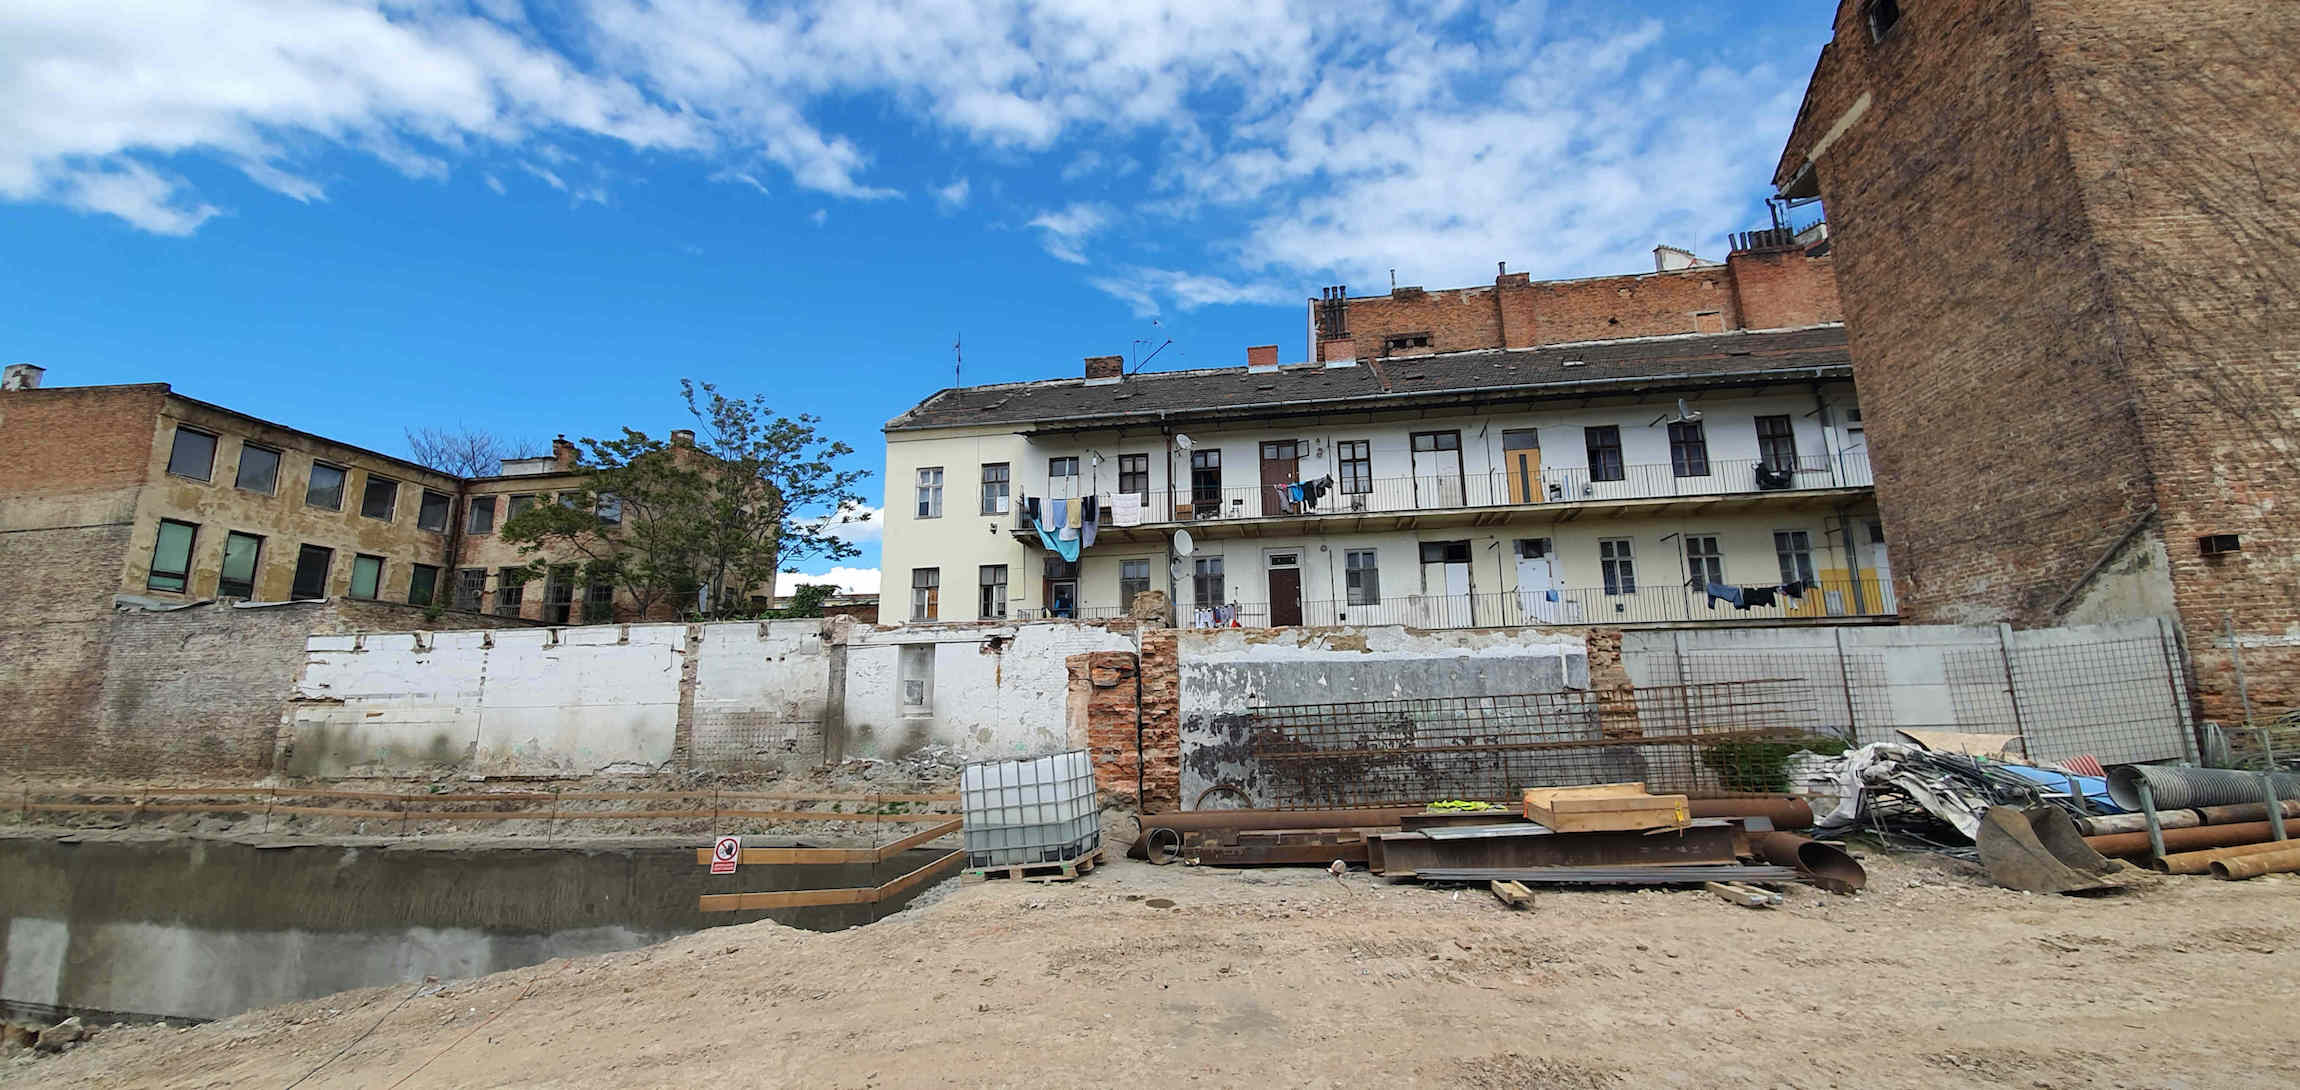 Výstavba mezi ulicemi Cejl a Francouzská v Brně, květen 2021